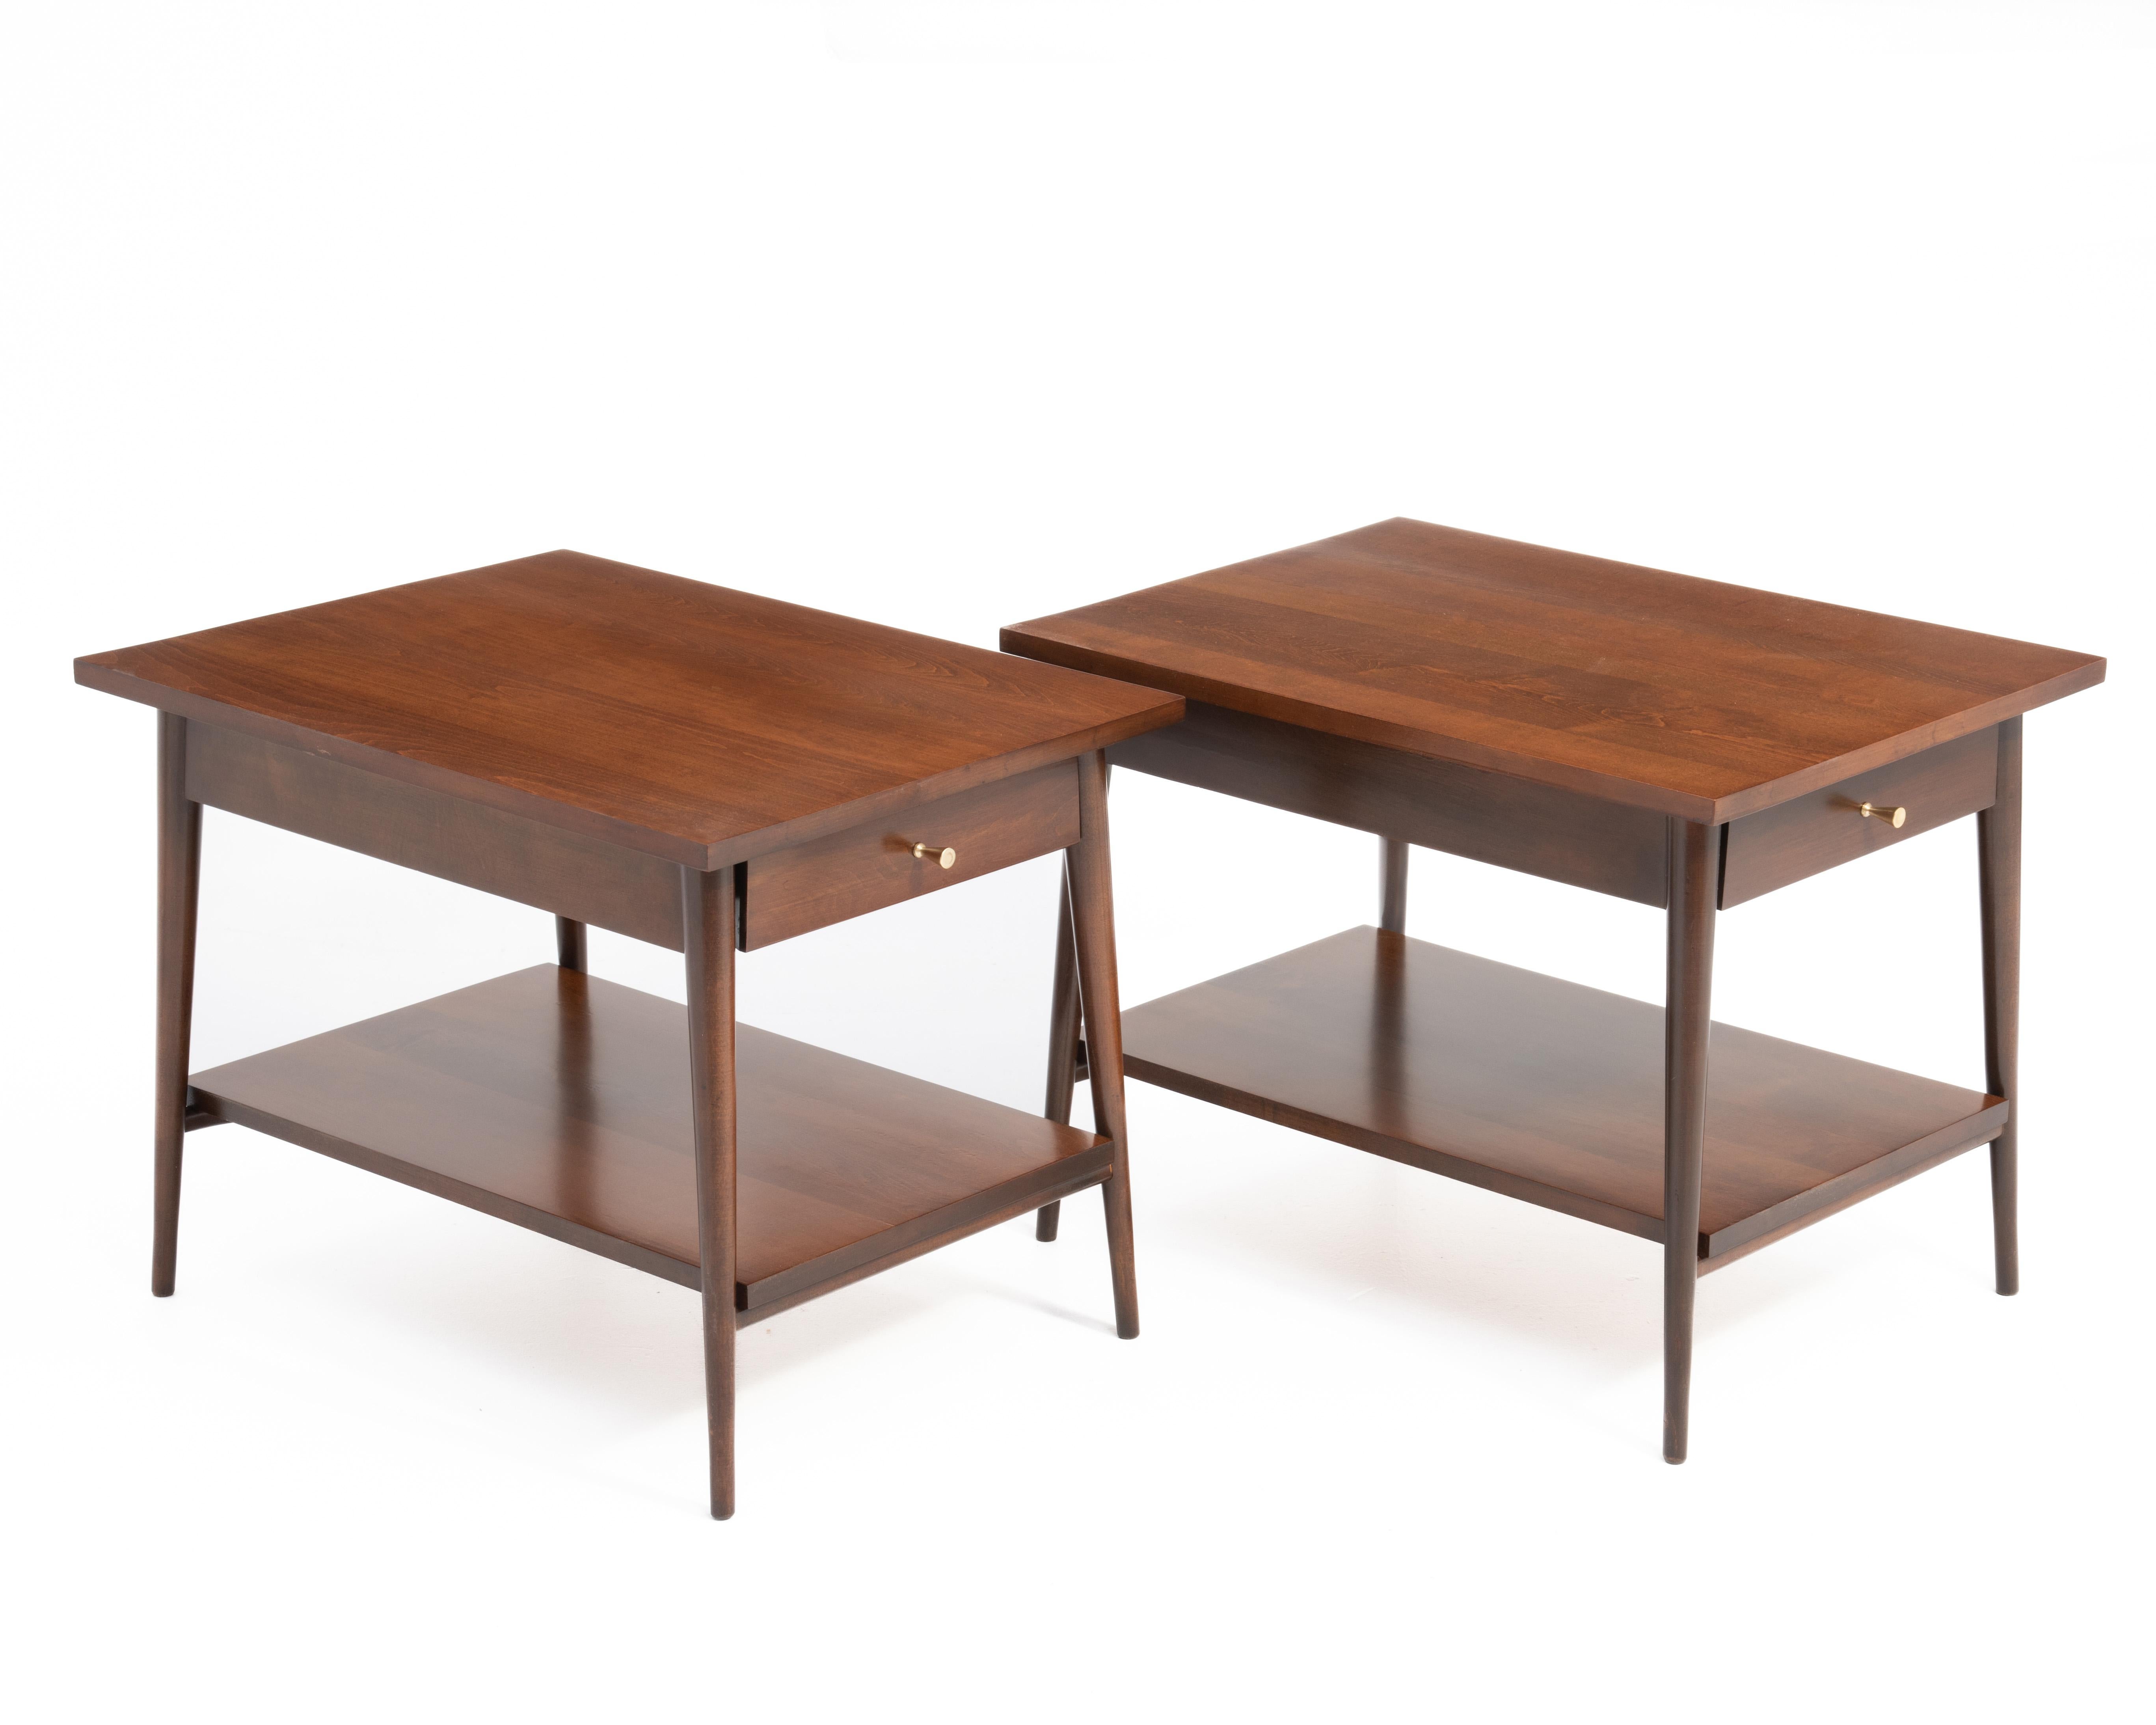 Paire de tables d'appoint de Paul McCobb Planner Group for Winchendon furniture. Restauré dans sa couleur marron d'origine avec les accessoires d'origine. Entièrement marqué.